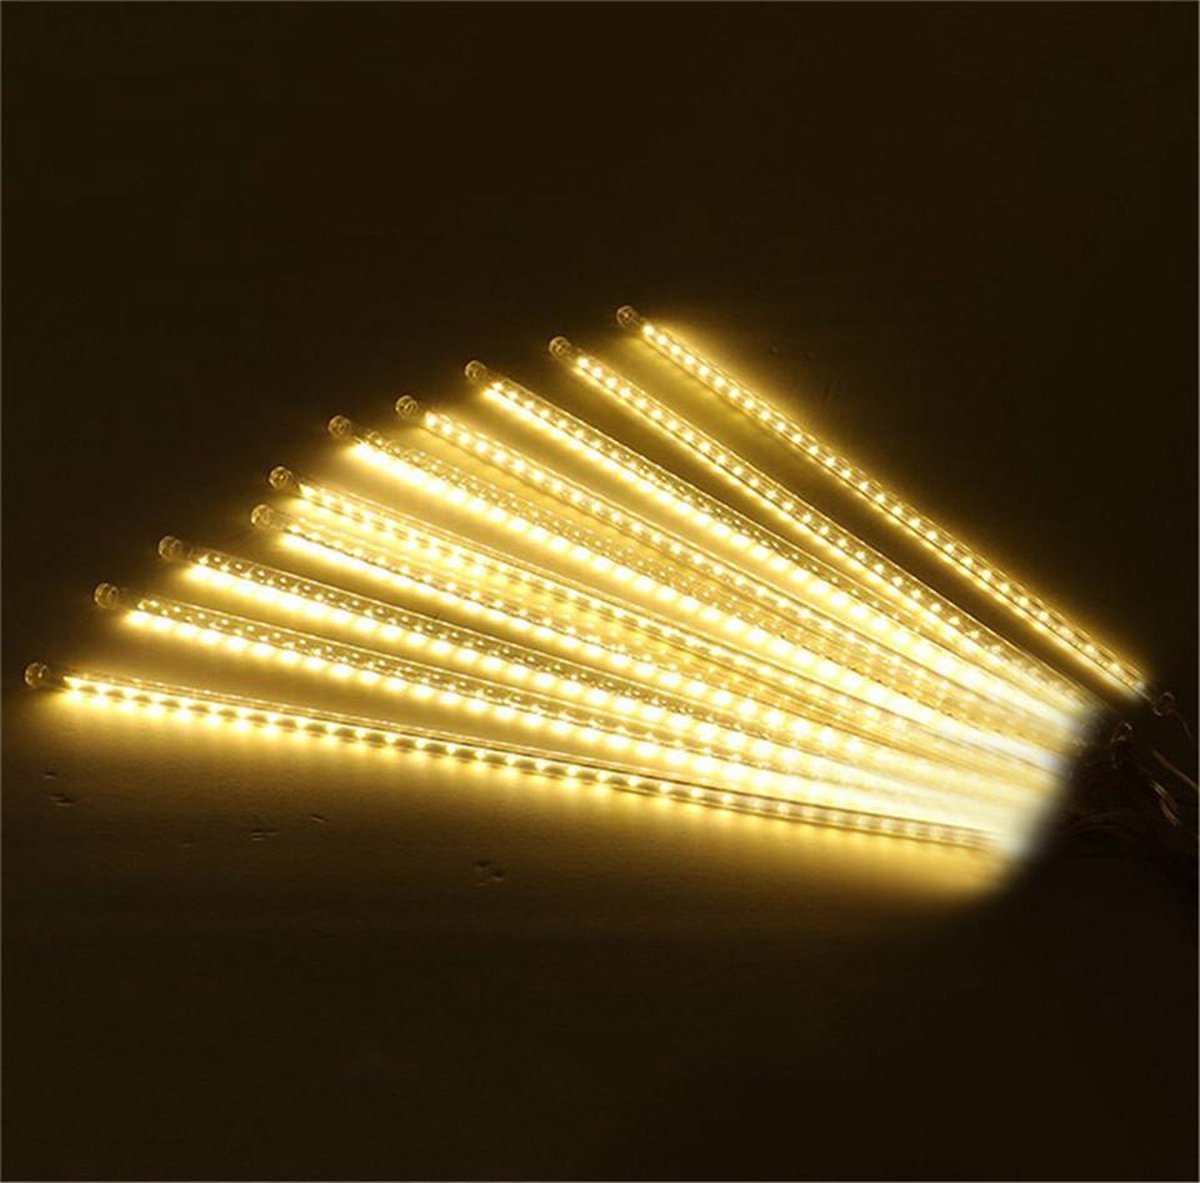 LED Druppel Verlichting 30 CM - ENERGIEBESPAREND - Meteoor Regen - Kerstverlichting - Voor binnen en buiten - XD-Xtreme